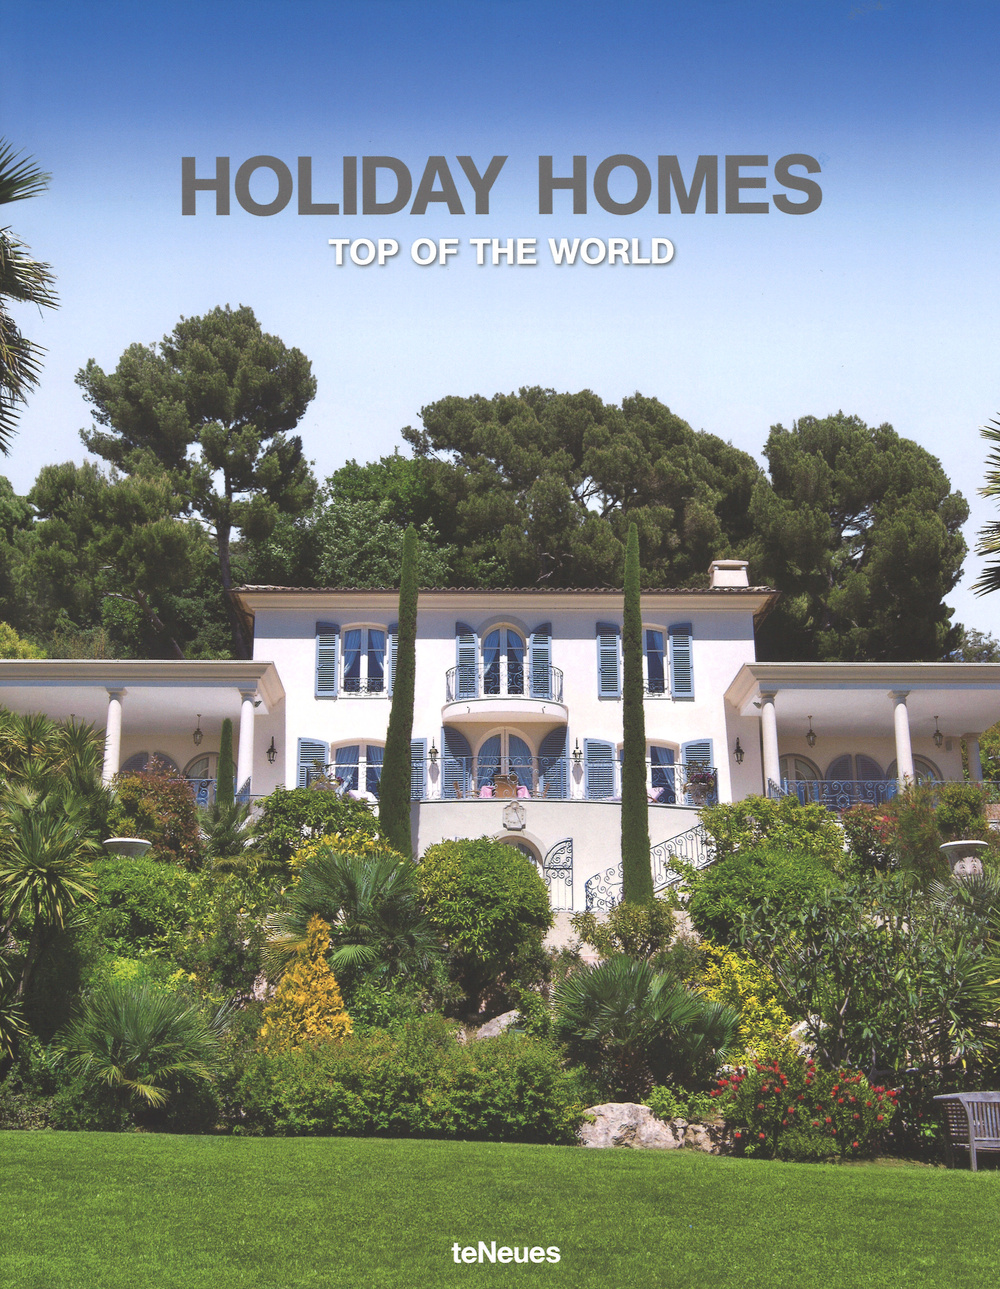 Holiday homes. Top of the world. Ediz. inglese, tedesca e spagnola